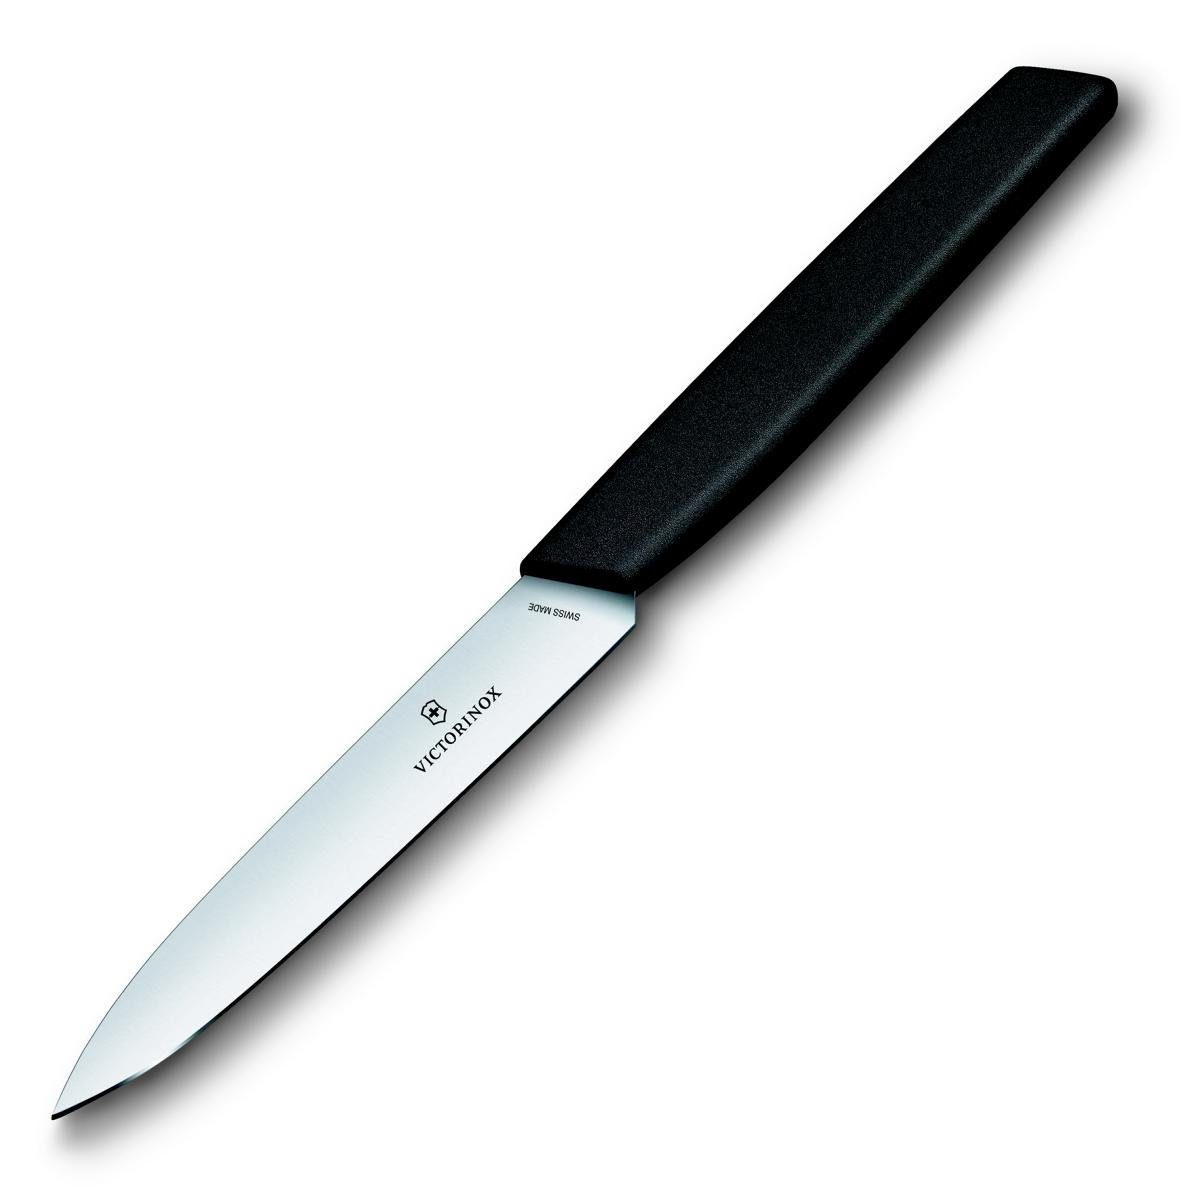 Victorinox Taschenmesser black 10 knife, cm, Paring